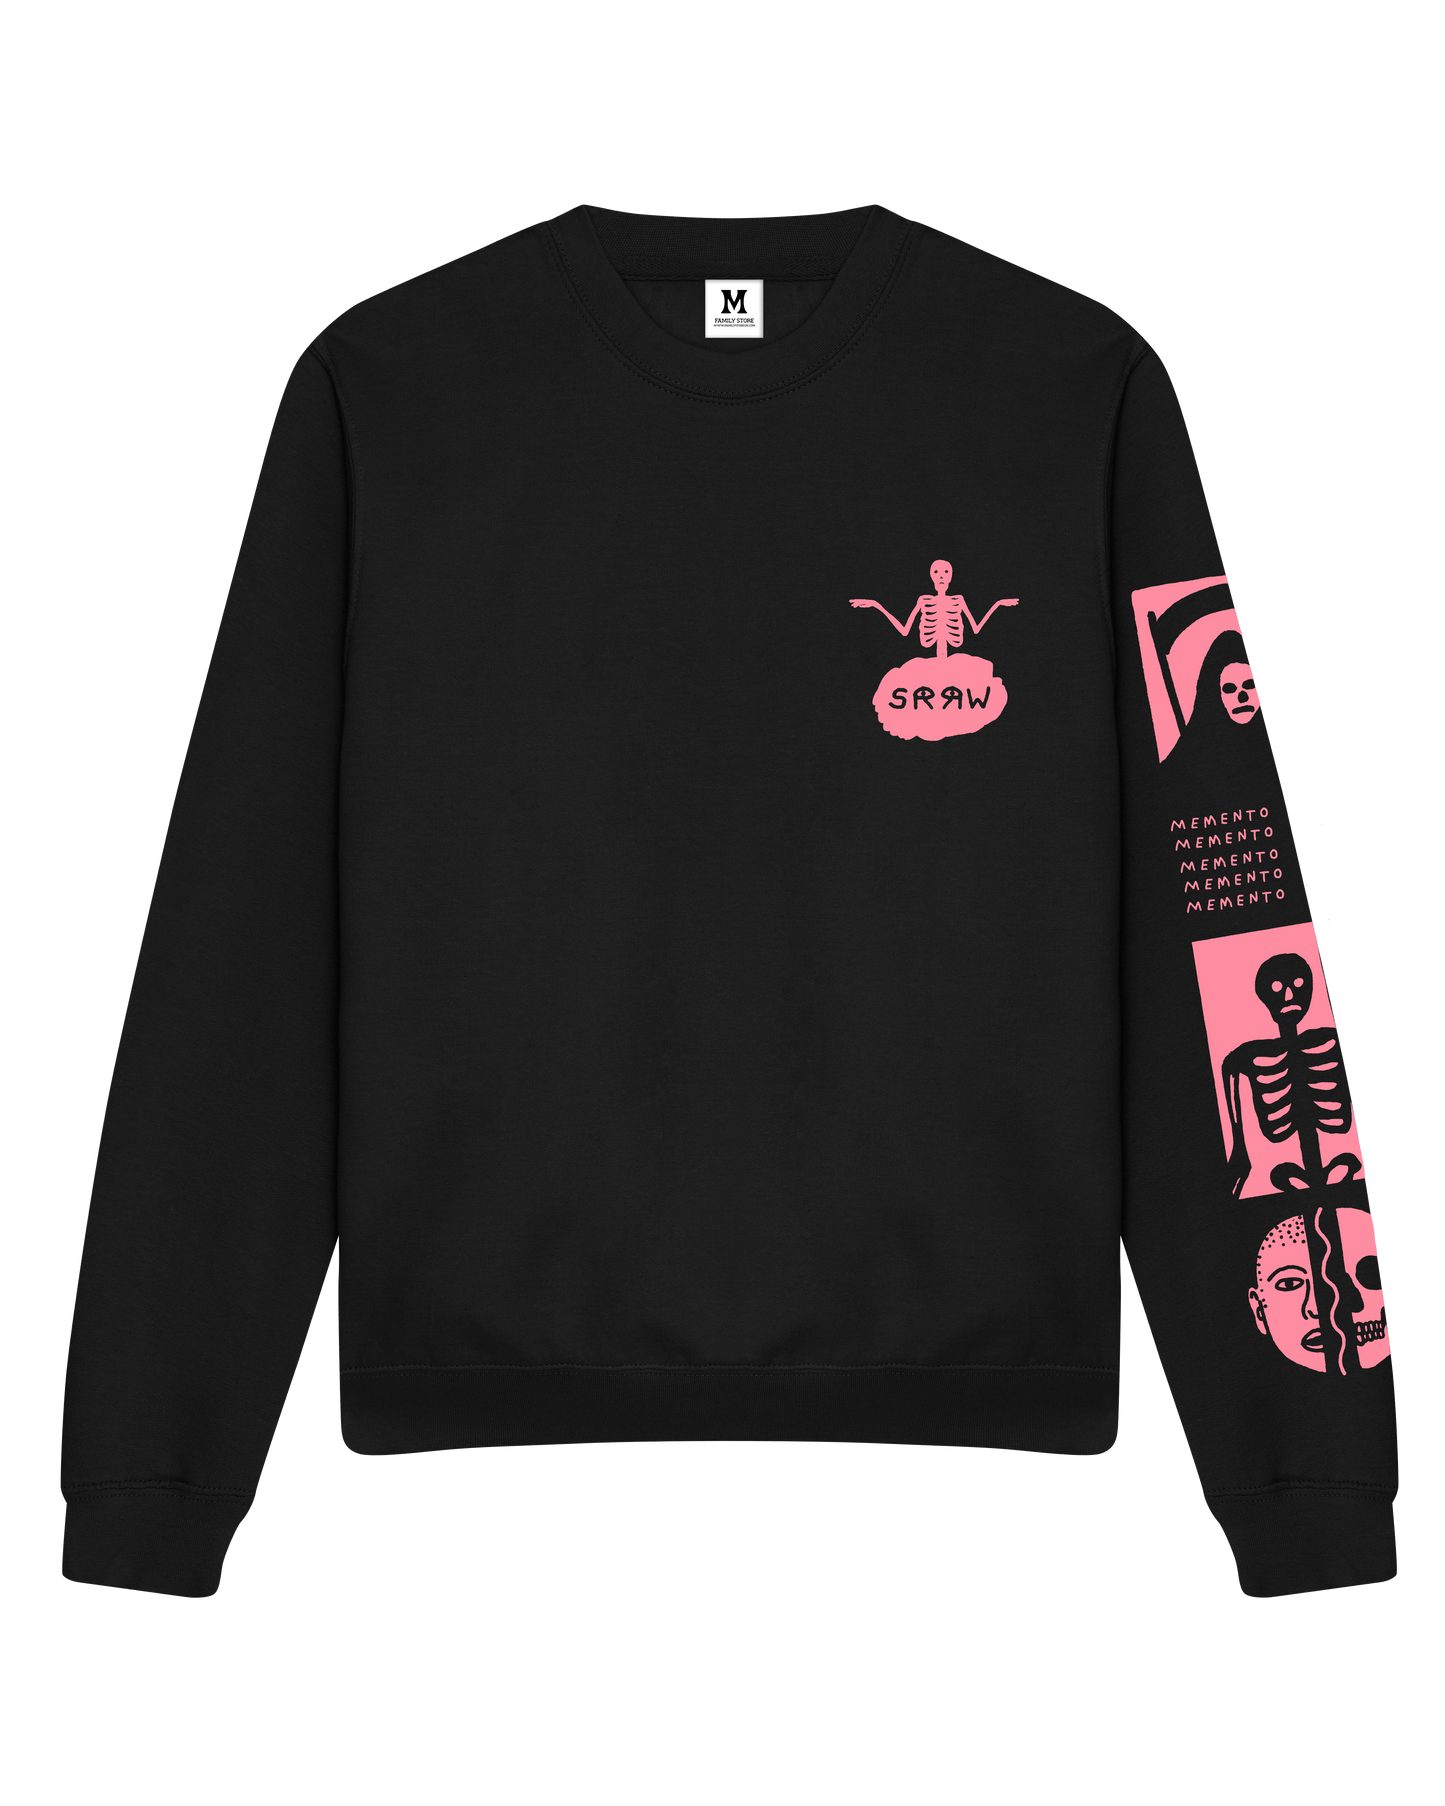 SANE Black Sweater by SRRW